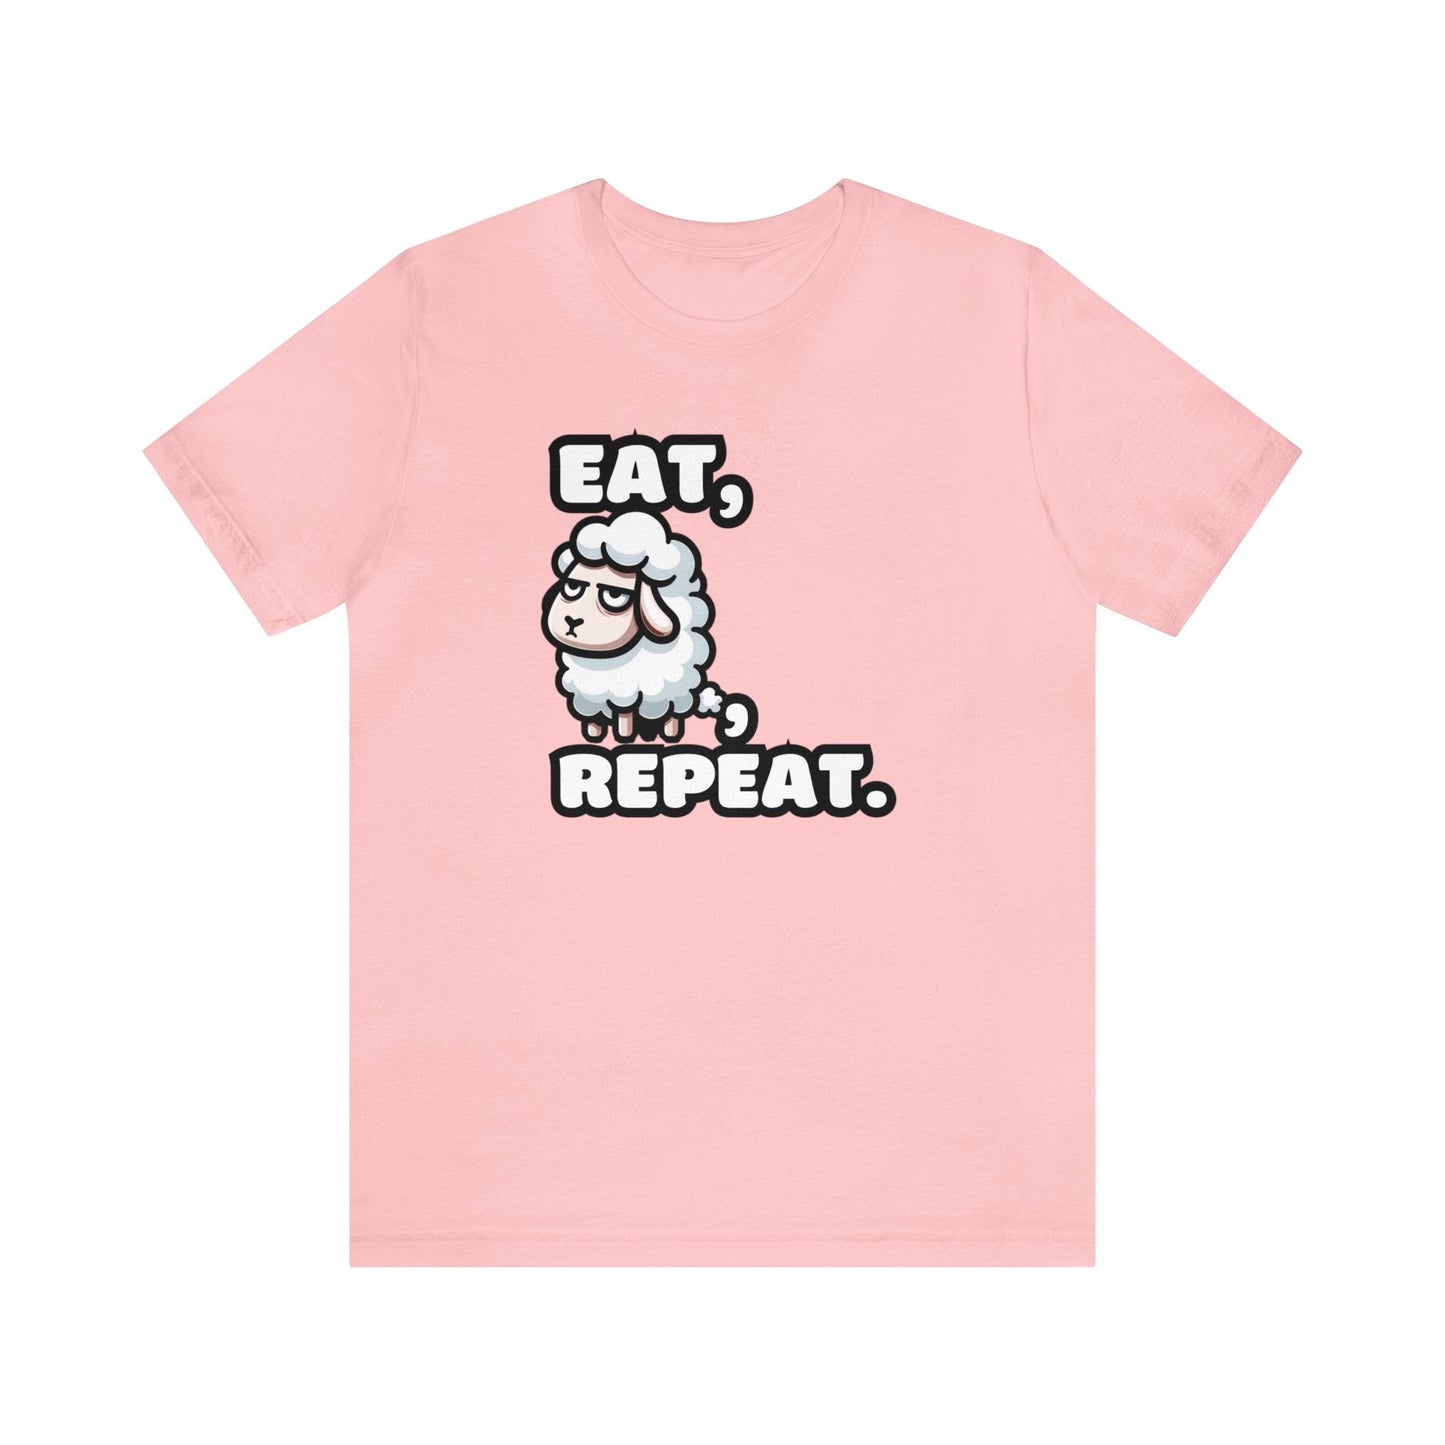 Eat, Sheep, Repeat - Sheep T-shirt Pink / S